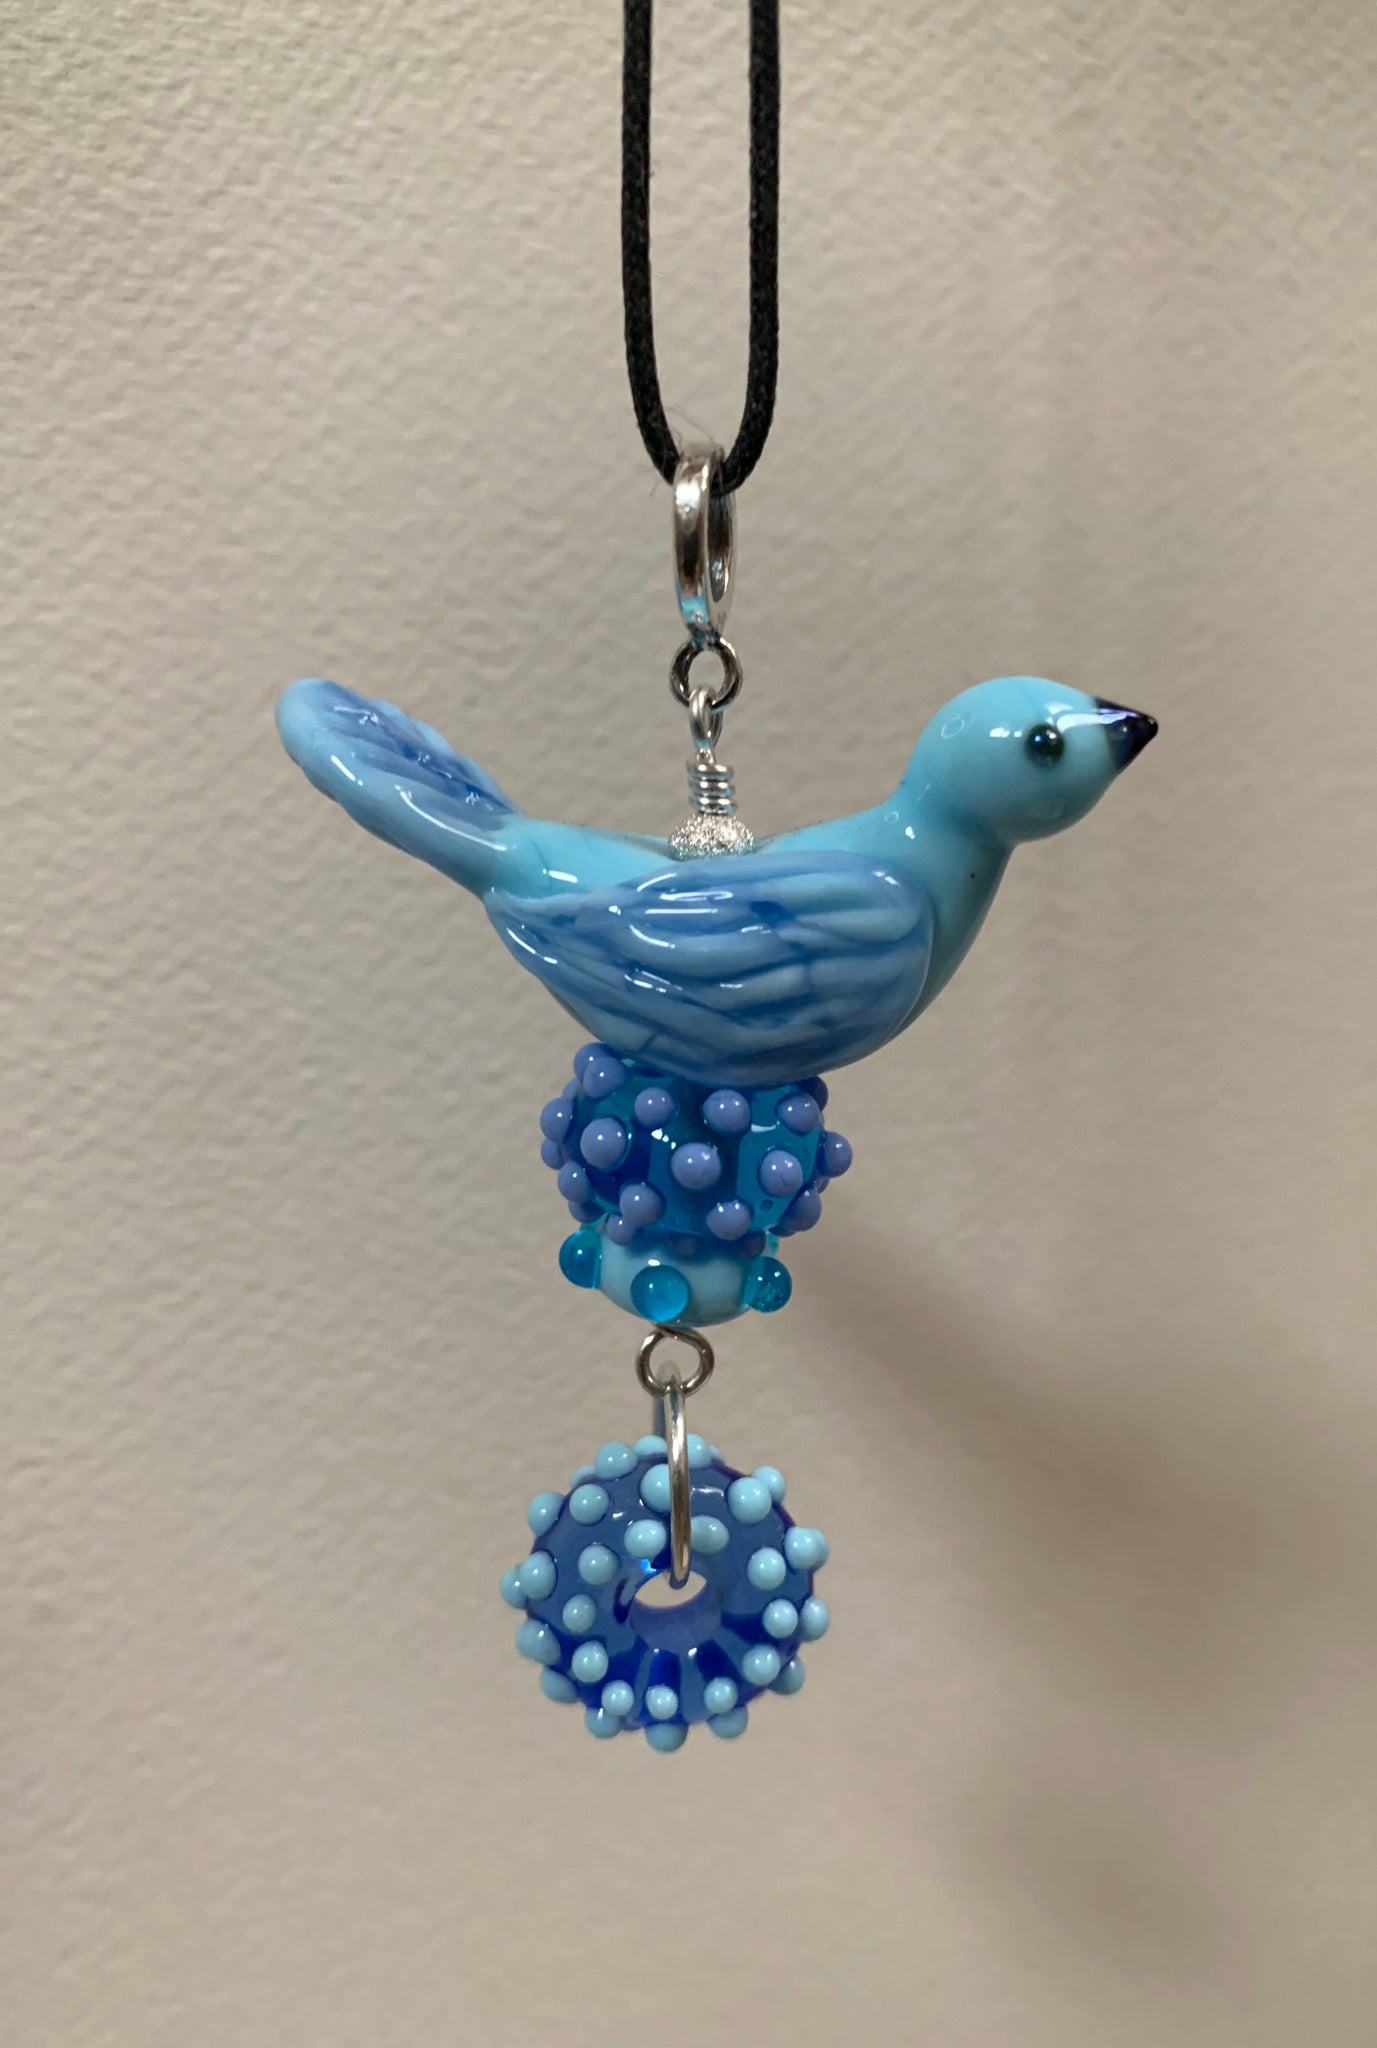 Bird pendant